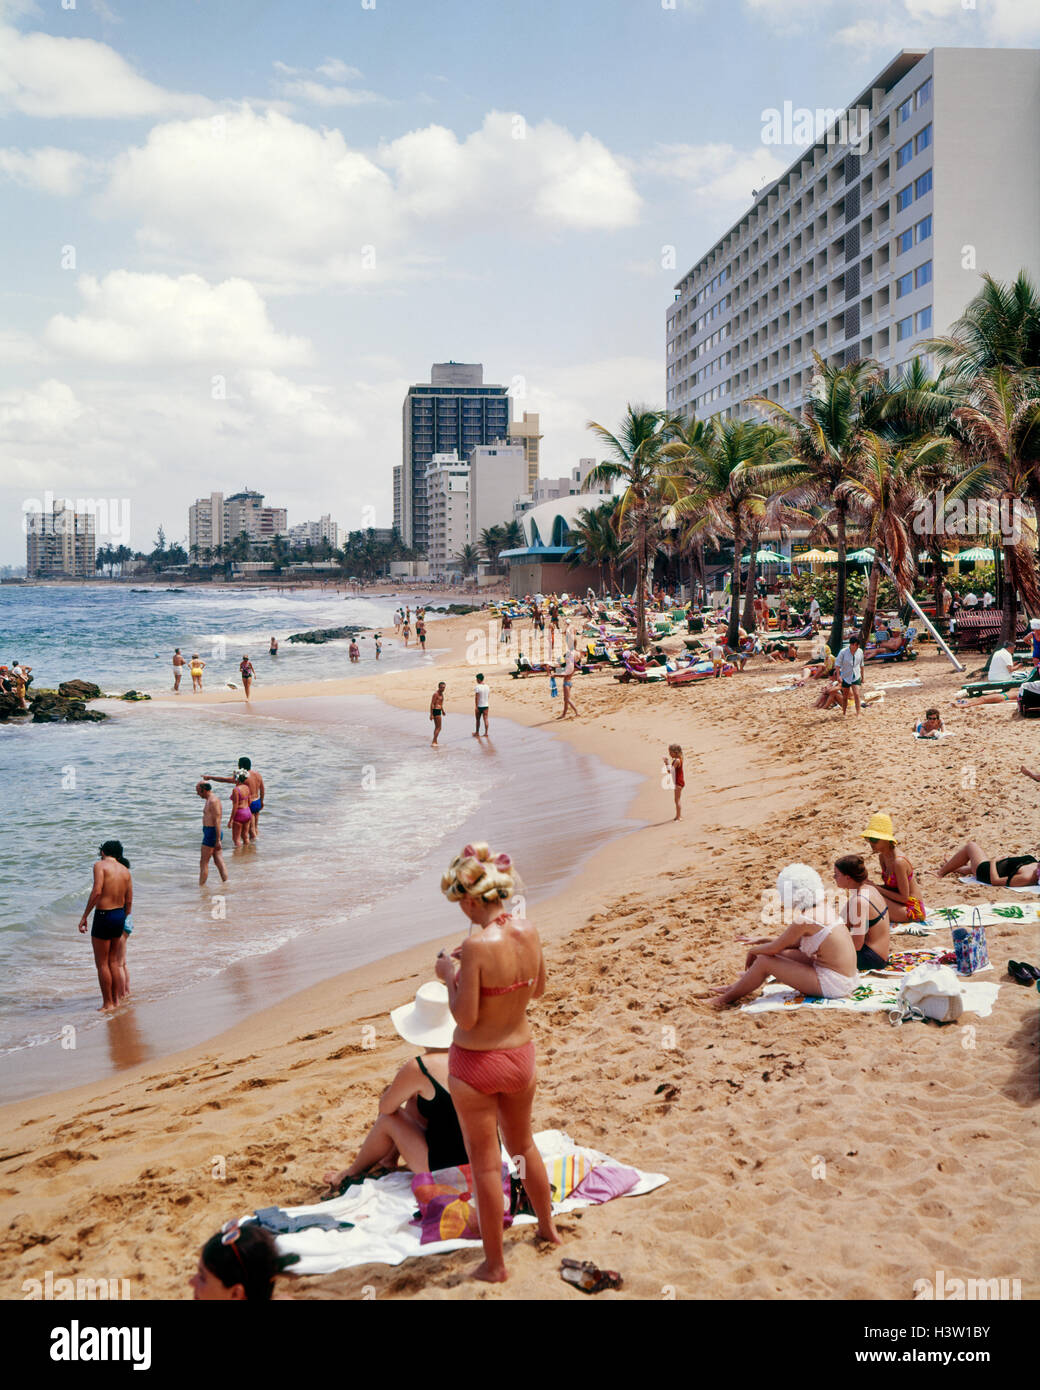 1960s CONDADO BEACH SAN JUAN PUERTO RICO Stock Photo